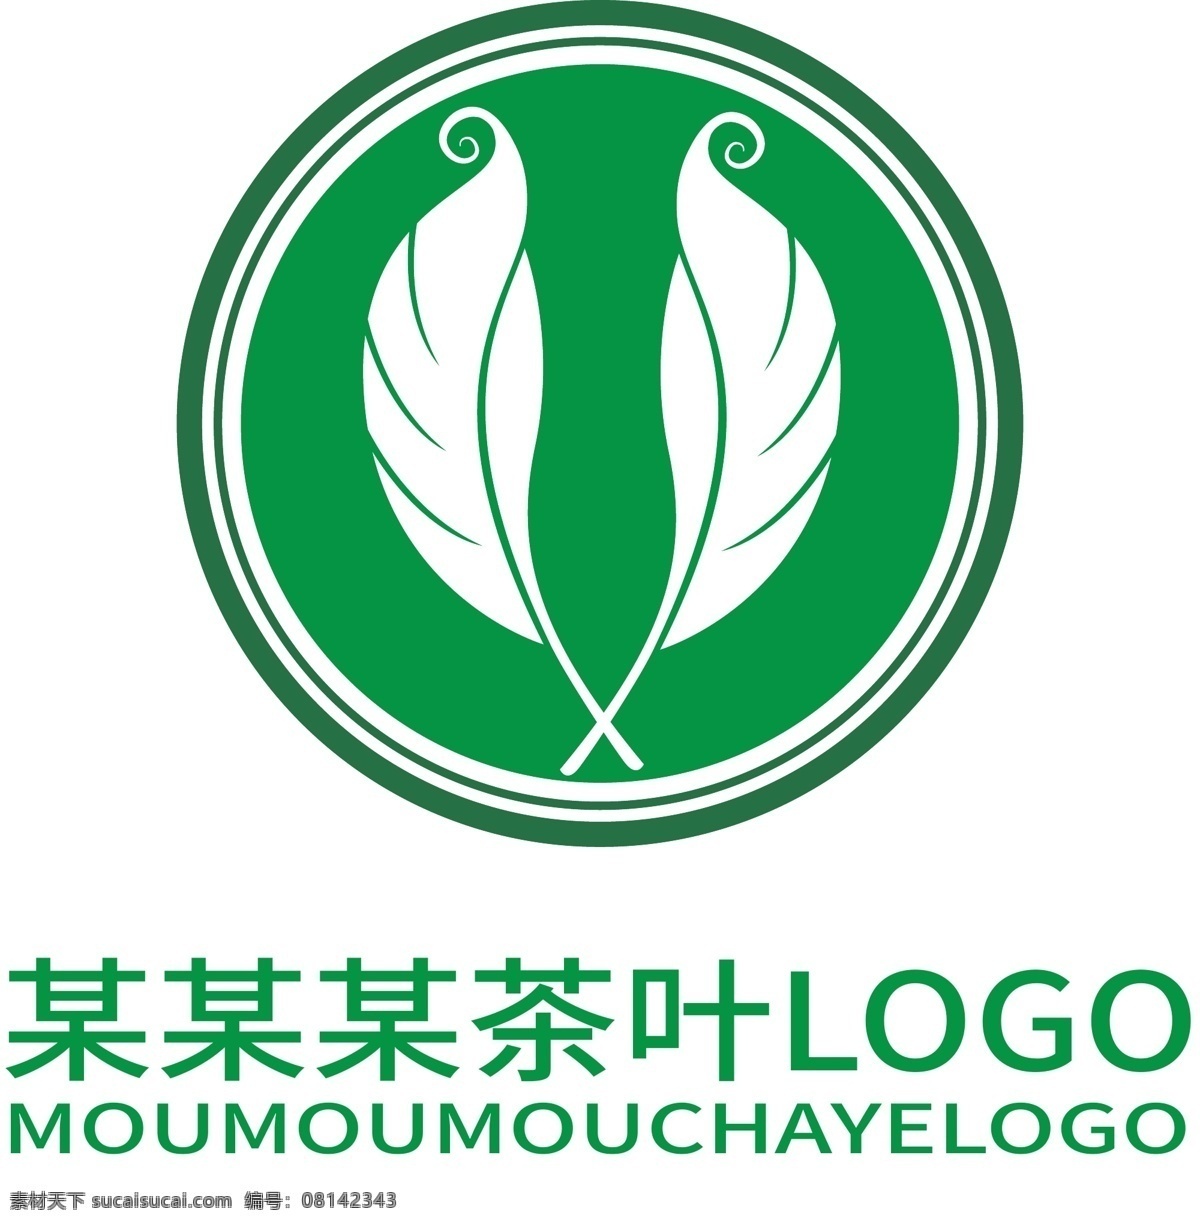 原创 绿色 茶叶 企业 logo 原创logo 绿色茶叶 企业logo 茶叶logo 绿色logo 茶叶素材